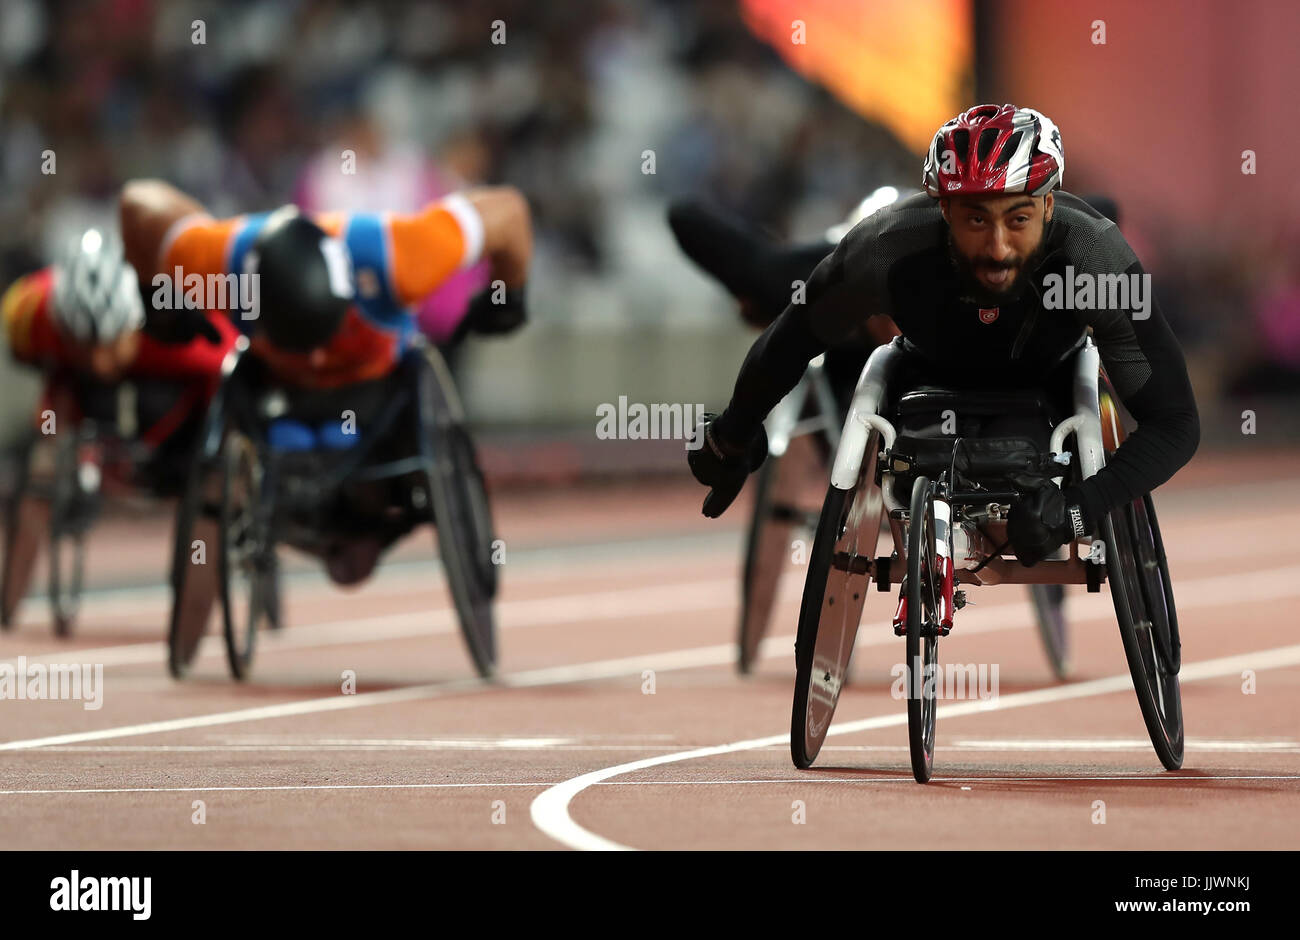 Tunesiens Yassine Gharbi auf dem Weg zum Gewinn der Männer 400 m-Finale T54 tagsüber sieben der 2017 Para Leichtathletik-Weltmeisterschaften in London Stadion. Stockfoto